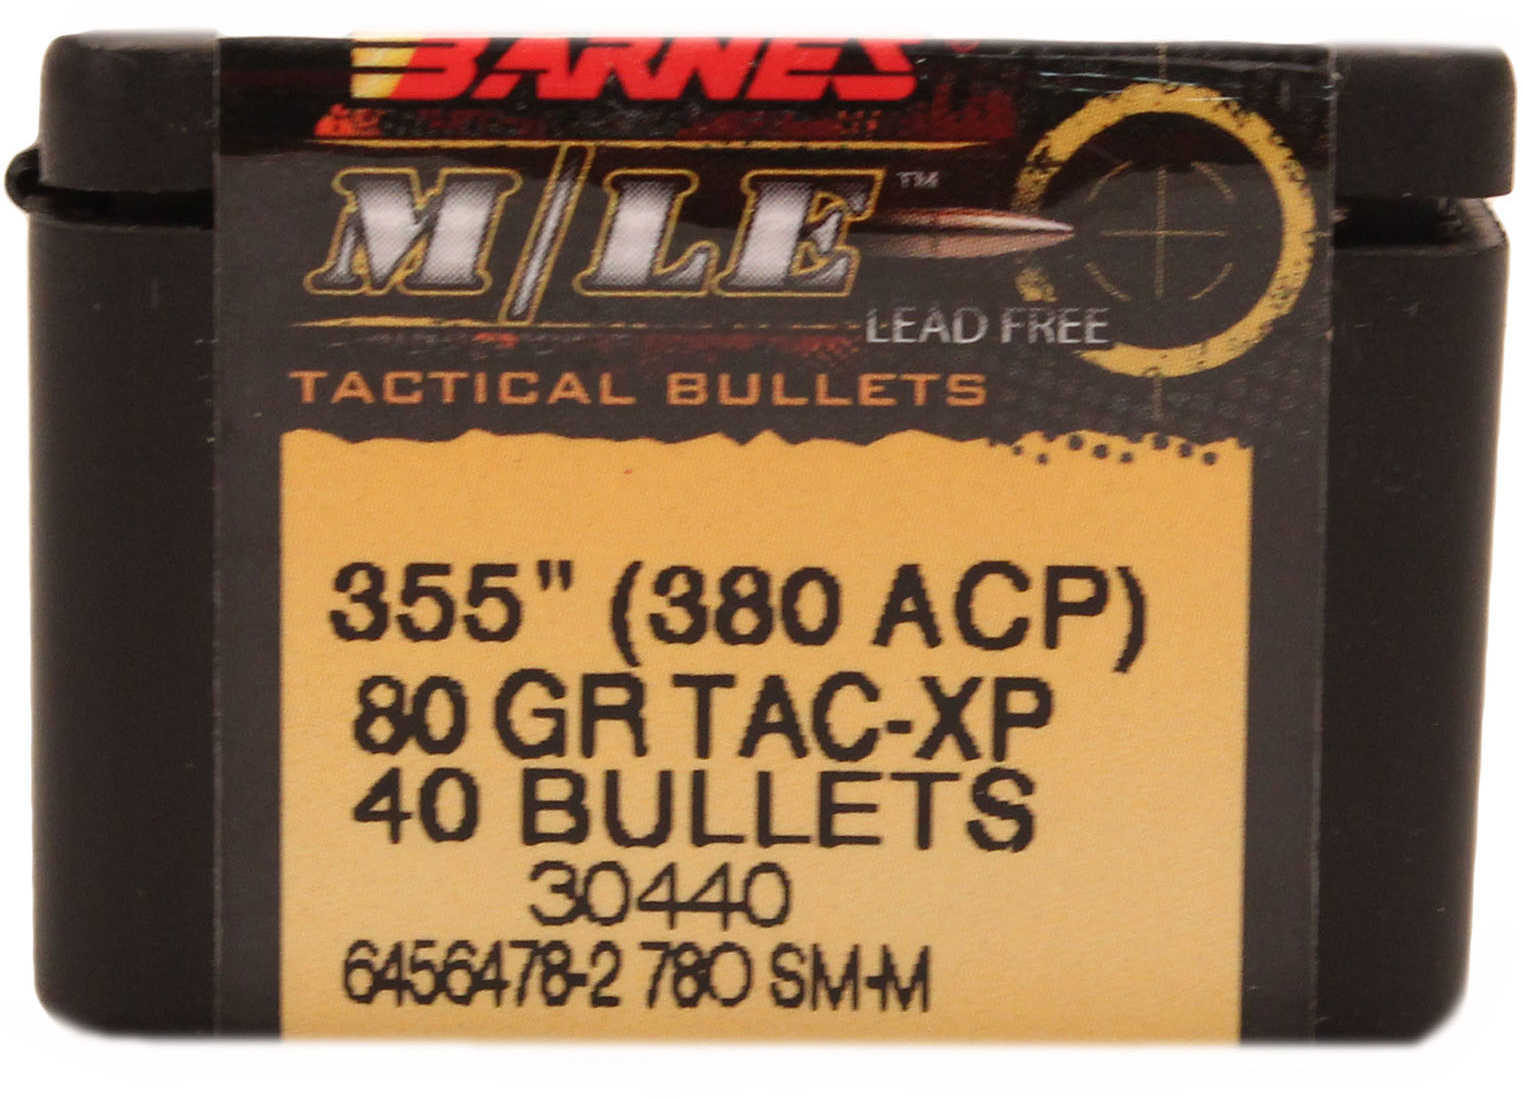 Barnes Bullets Tac-XP .355" 80 Grains Flat Base 380 ACP (Per 40) 35500